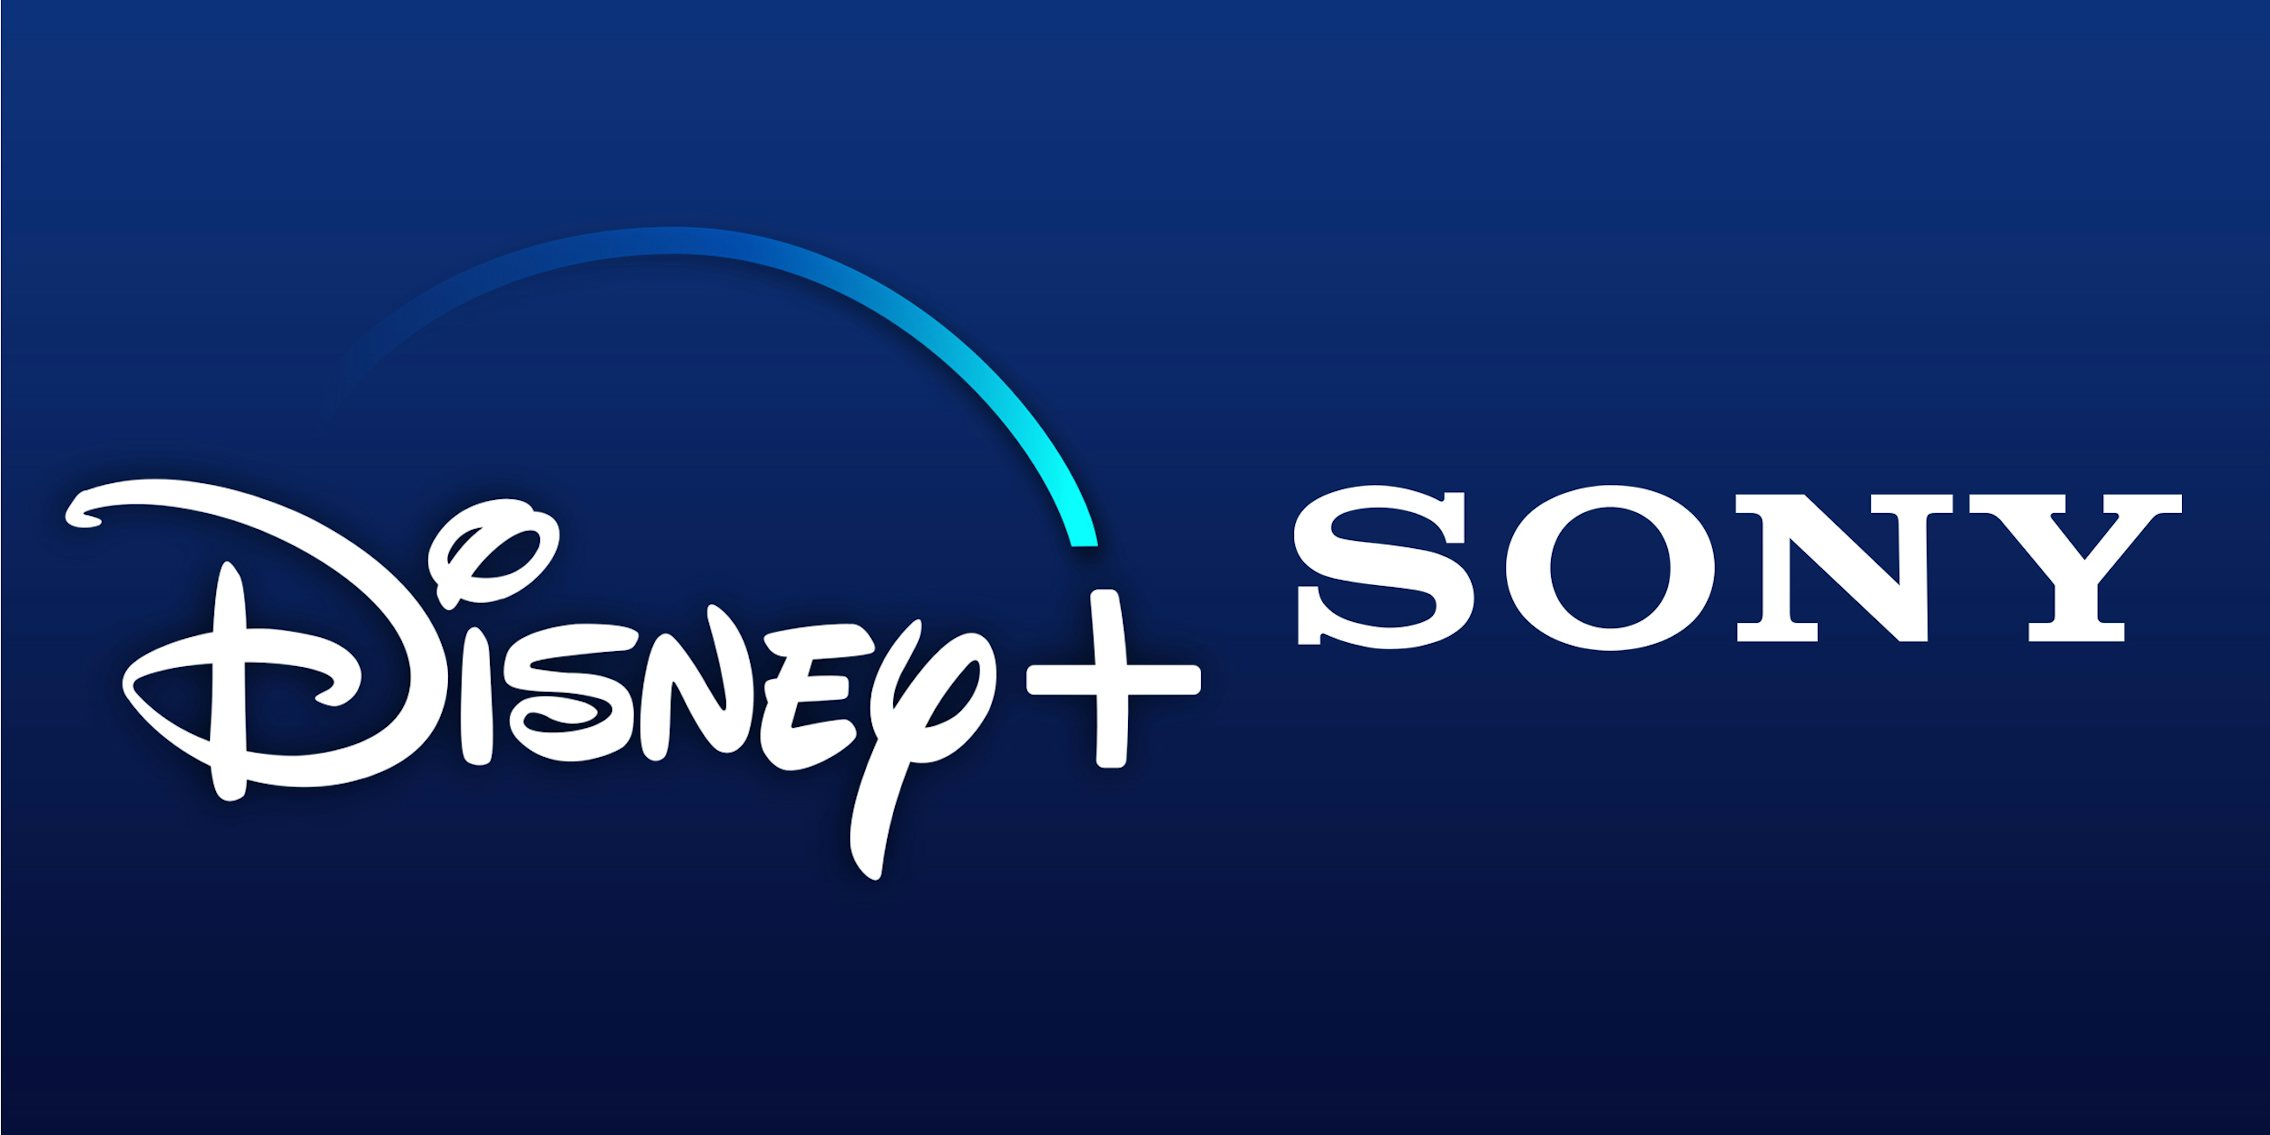 Disney Plus Sony smart tv